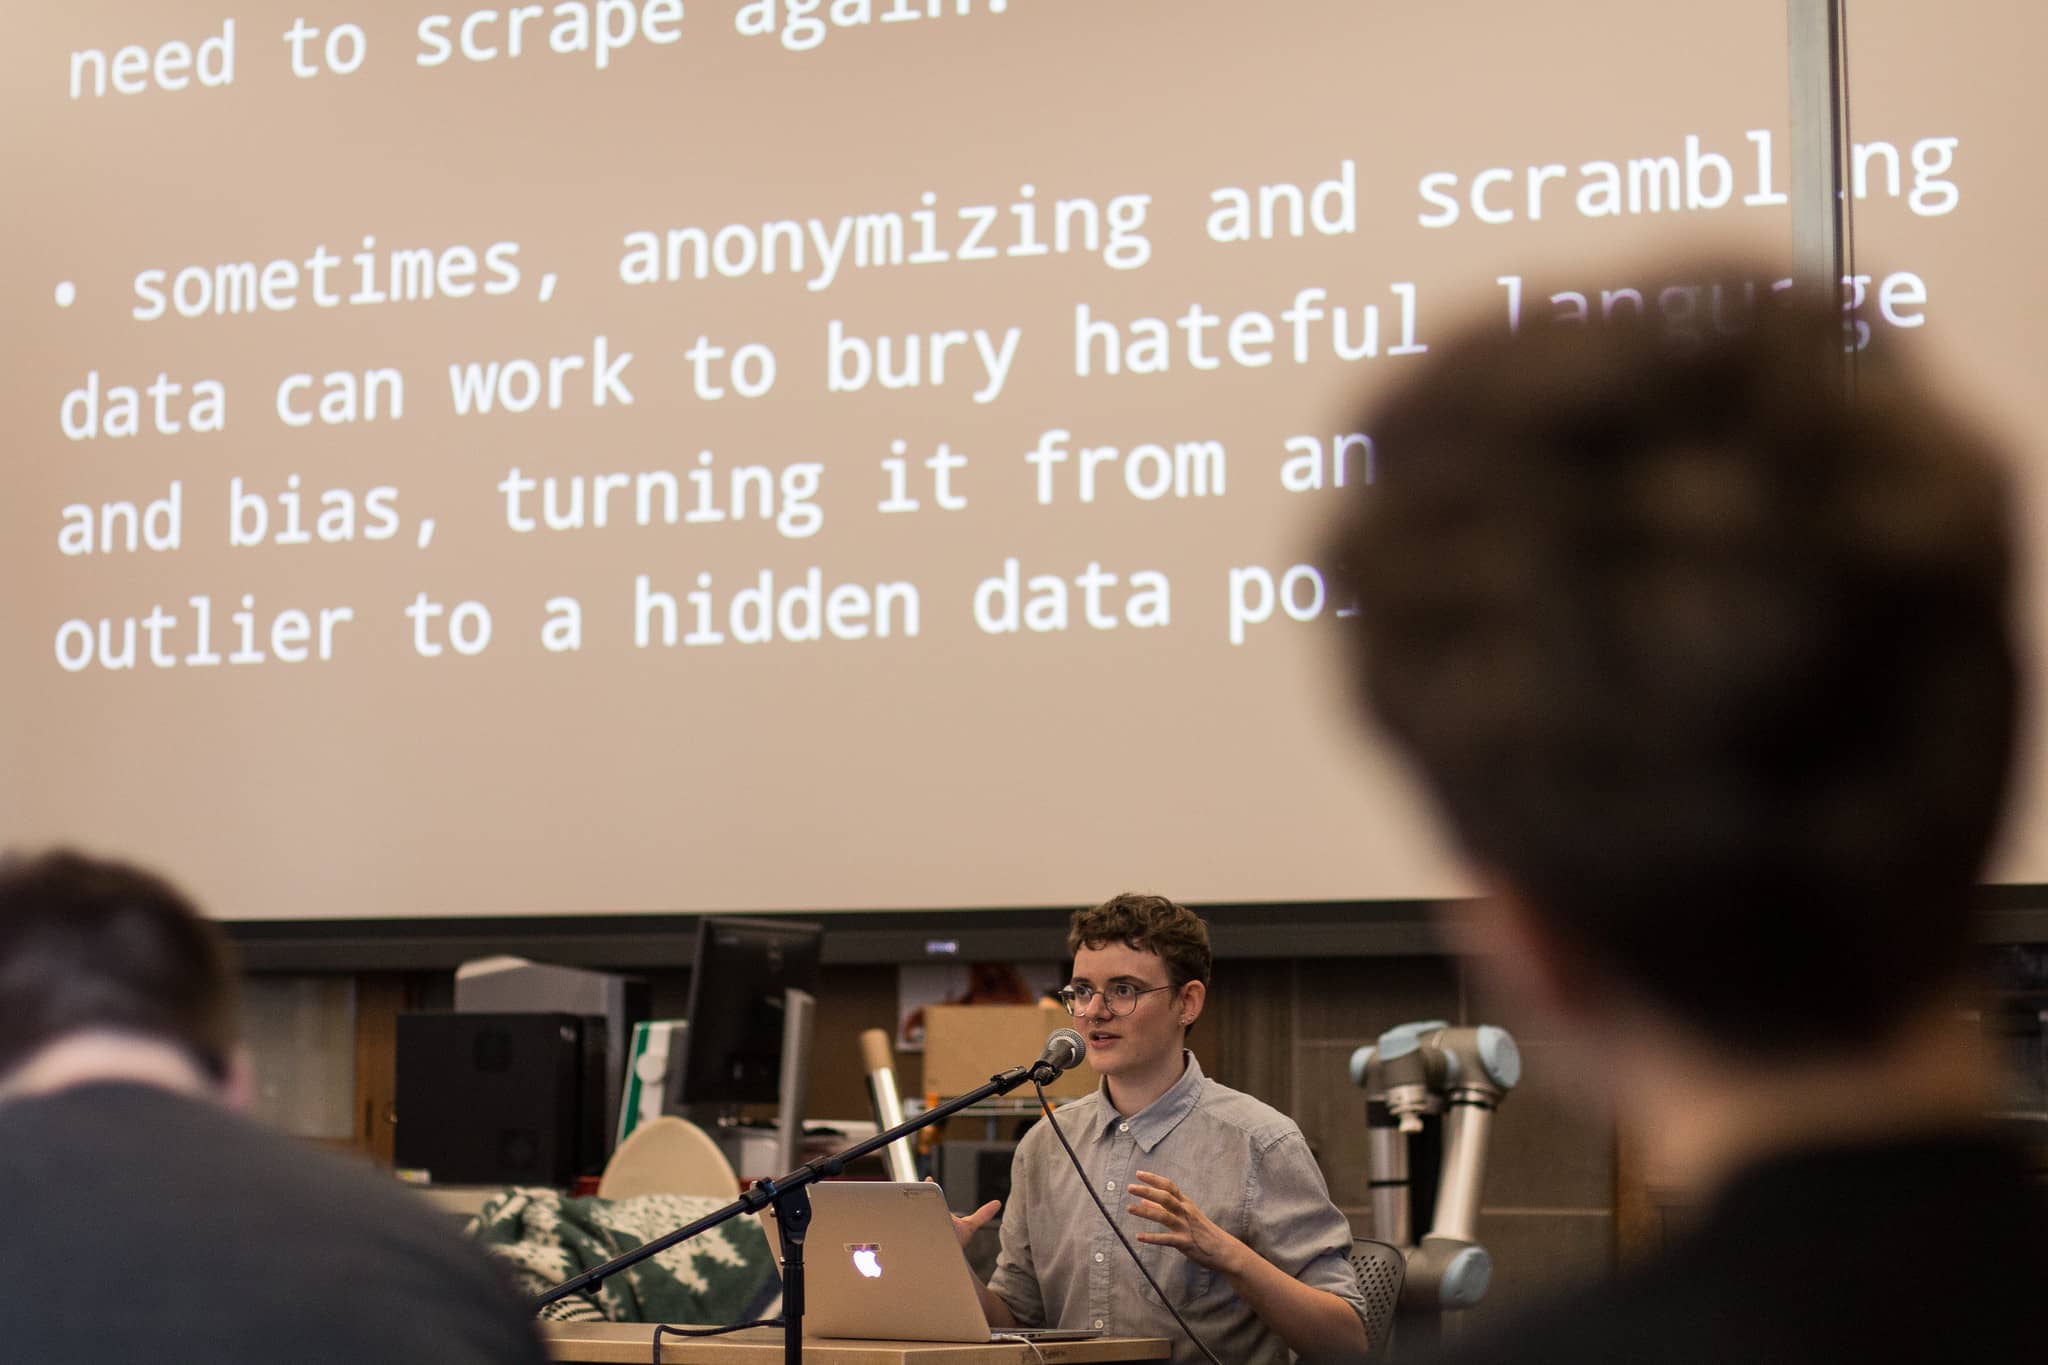 Participante en el podio habla frente a un texto proyectado sobre el problema de anonimizar datos "